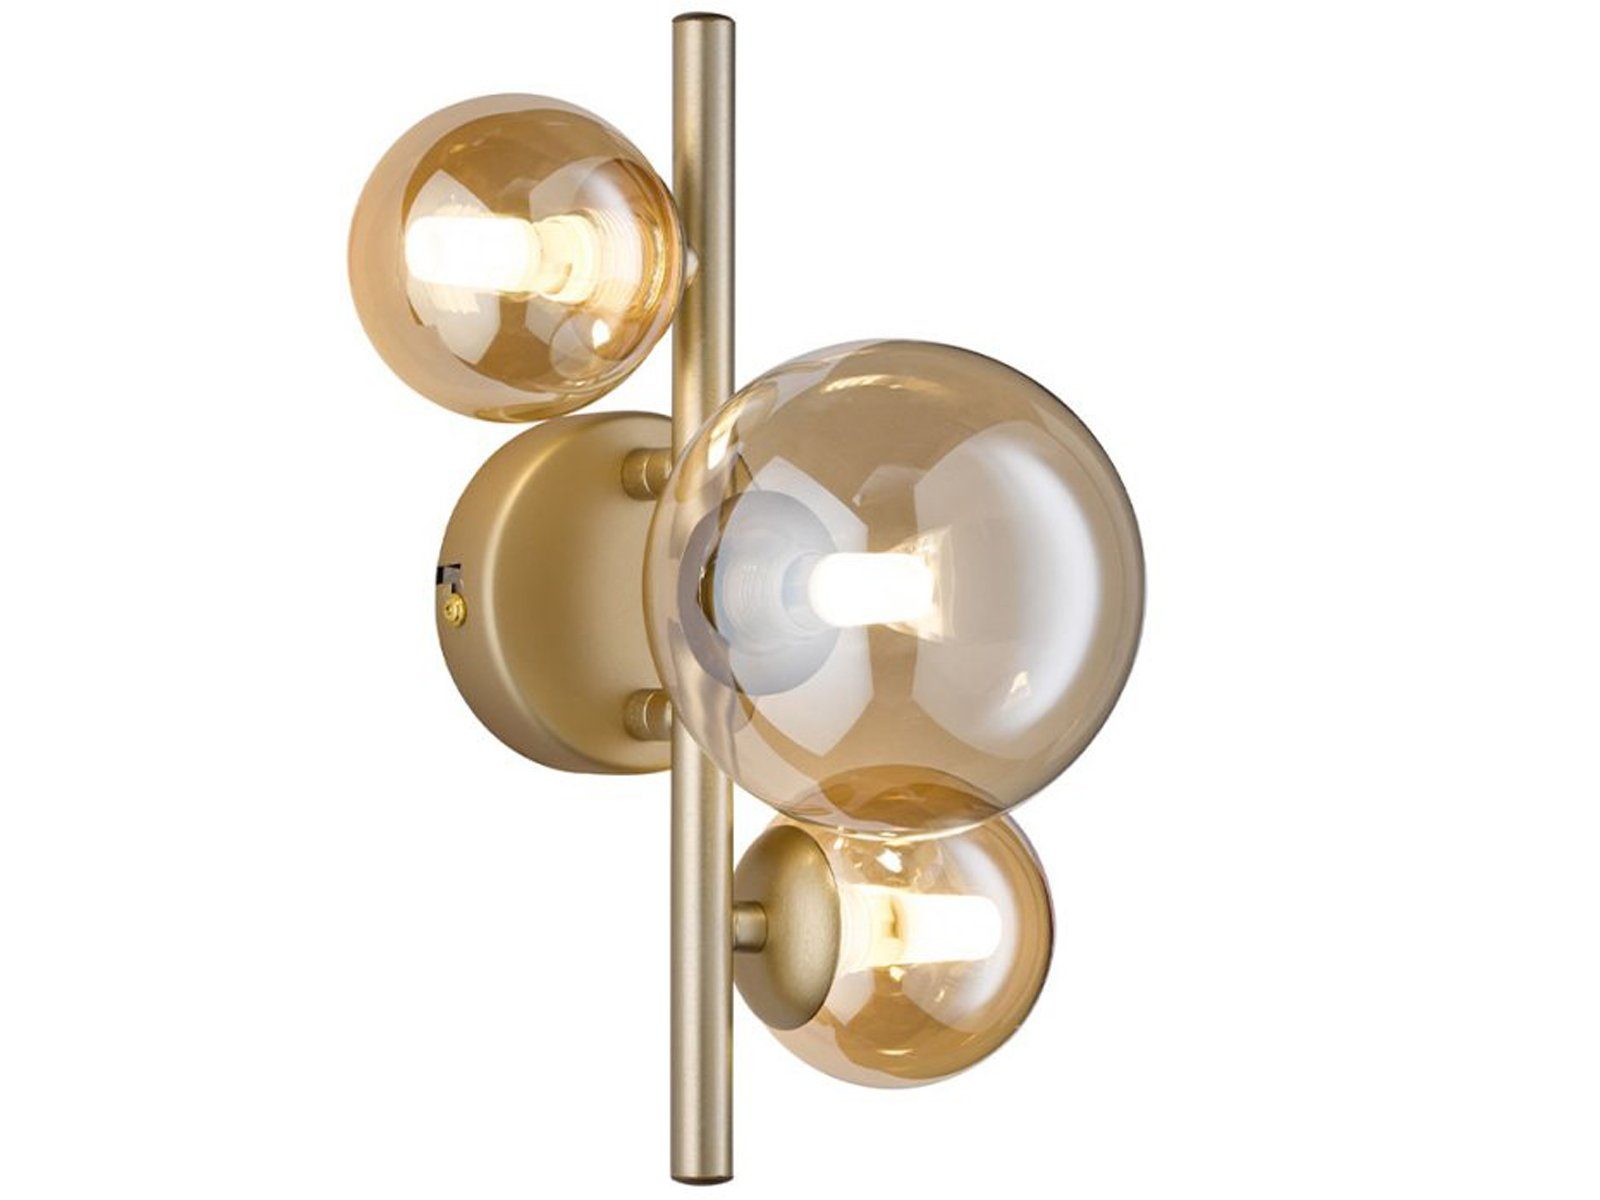 matt / Amberfarben LED Höhe Gold LED matt, 28cm innen, wechselbar, Bubble WOFI Warmweiß, ausgefallene Lampe Gold Glas-kugel, Wandleuchte, 4x